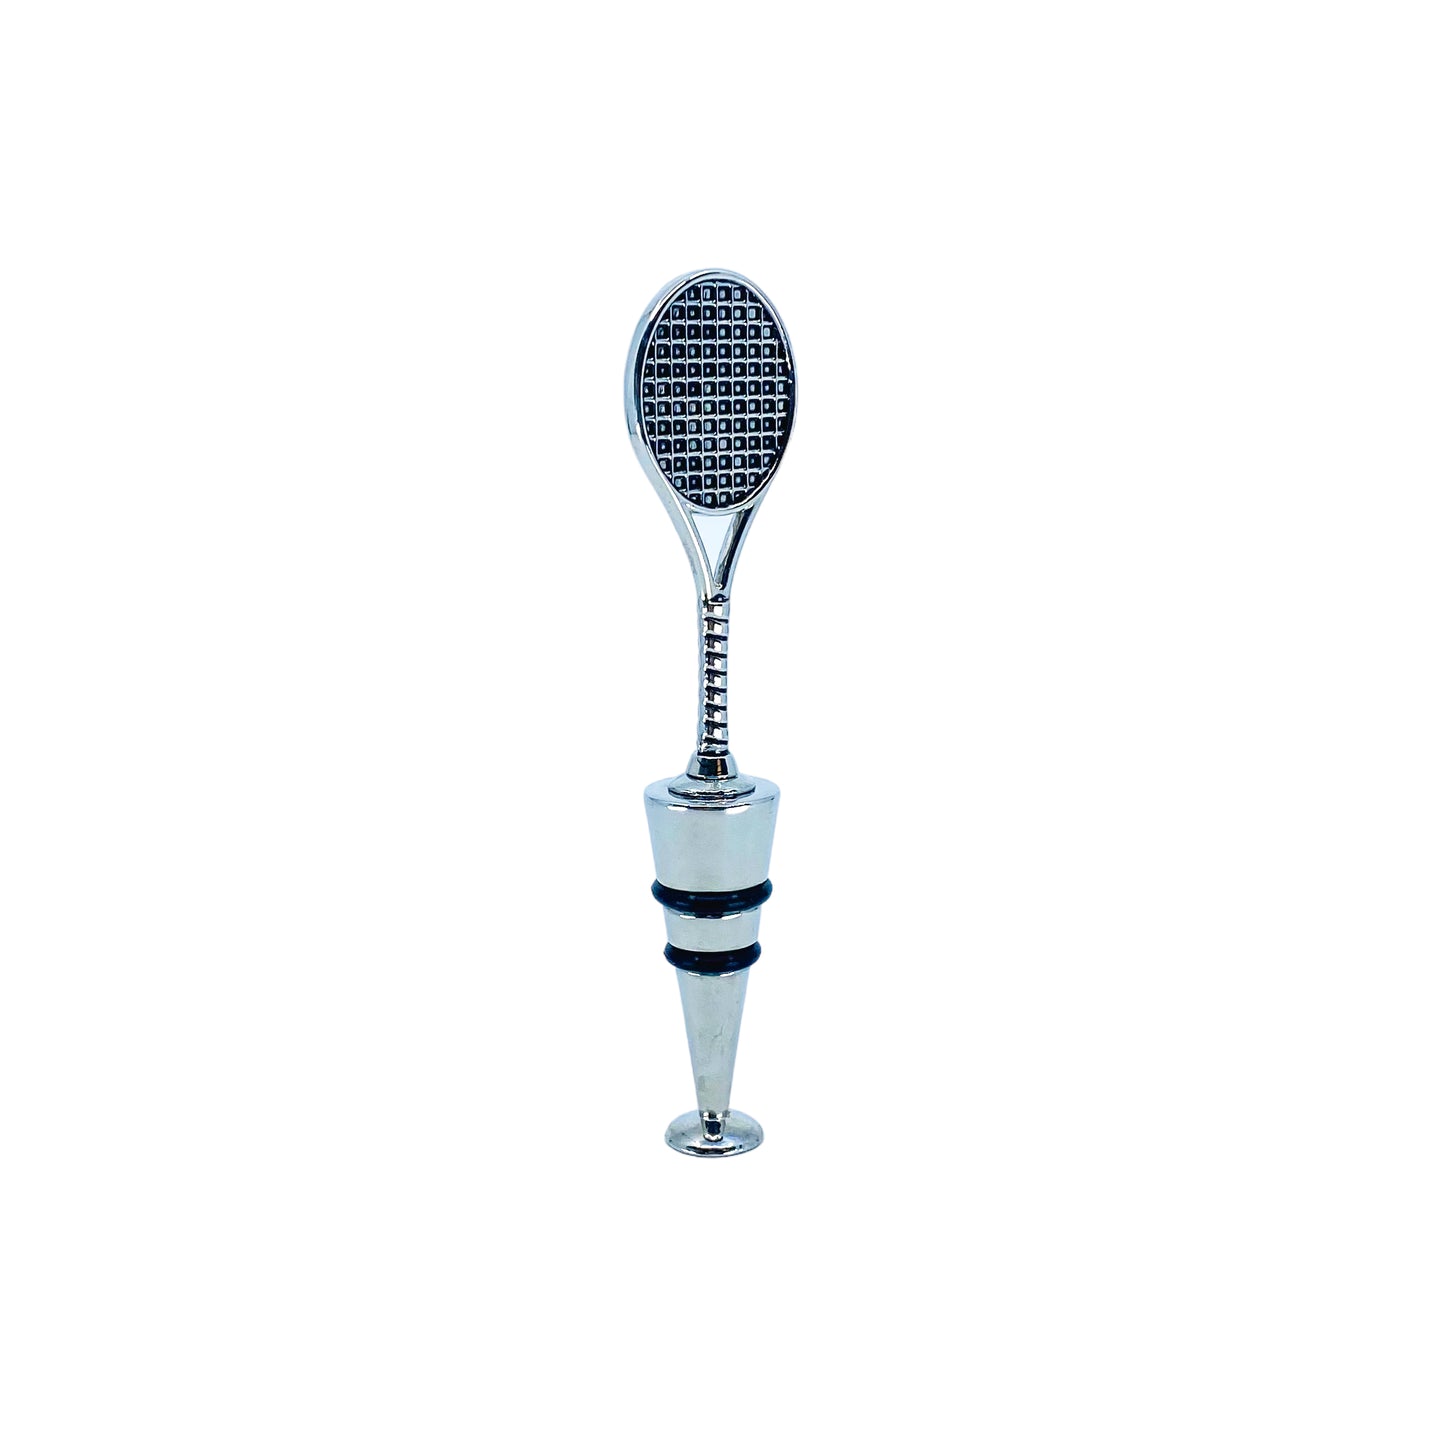 Tennis Racket Bottle Stopper